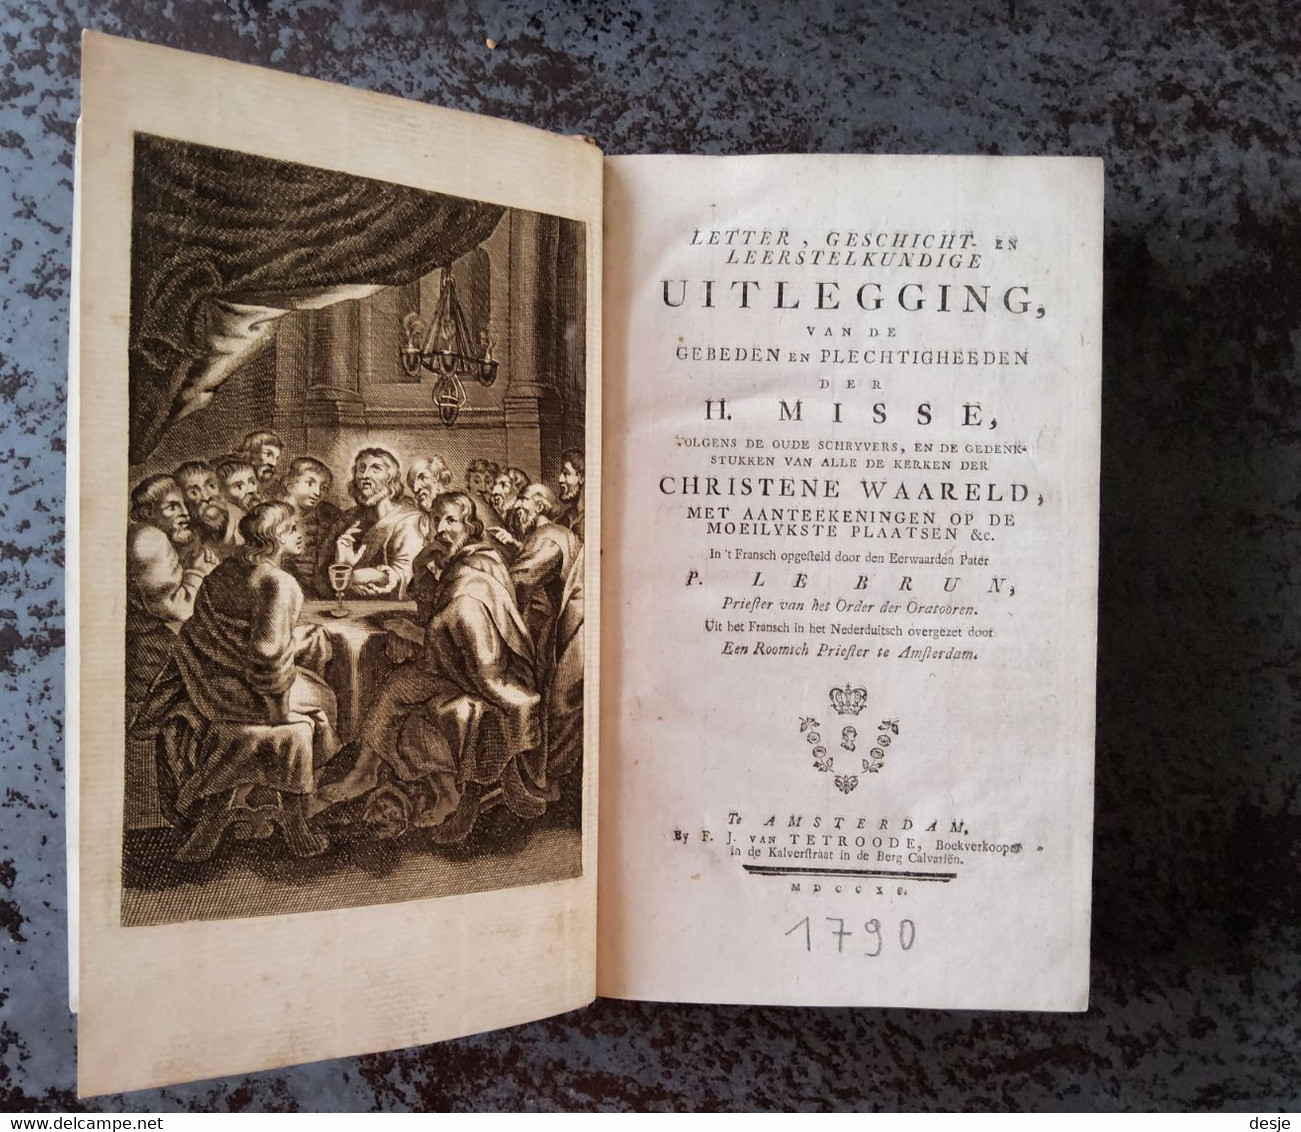 Uitlegging Van De Gebeden En Plechtigheden Der H. Misse Door P. Le Brun, 733 Blz., Amsterdam, 1790 - Antiquariat